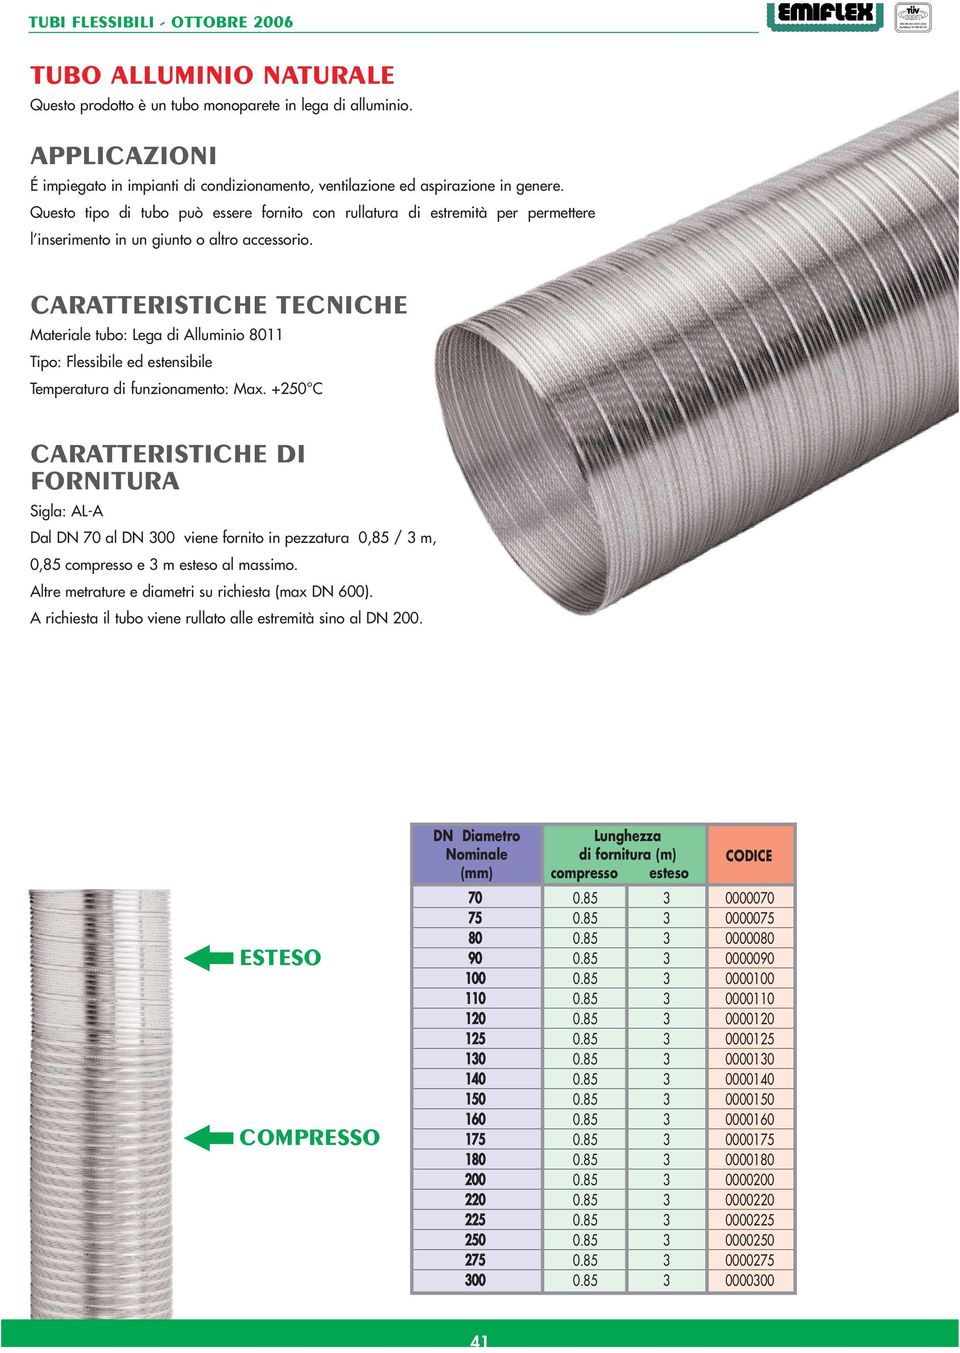 CARATTERISTICHE TECNICHE Materiale tubo: Lega di Alluminio 8011 Tipo: Flessibile ed estensibile Temperatura di funzionamento: Max.